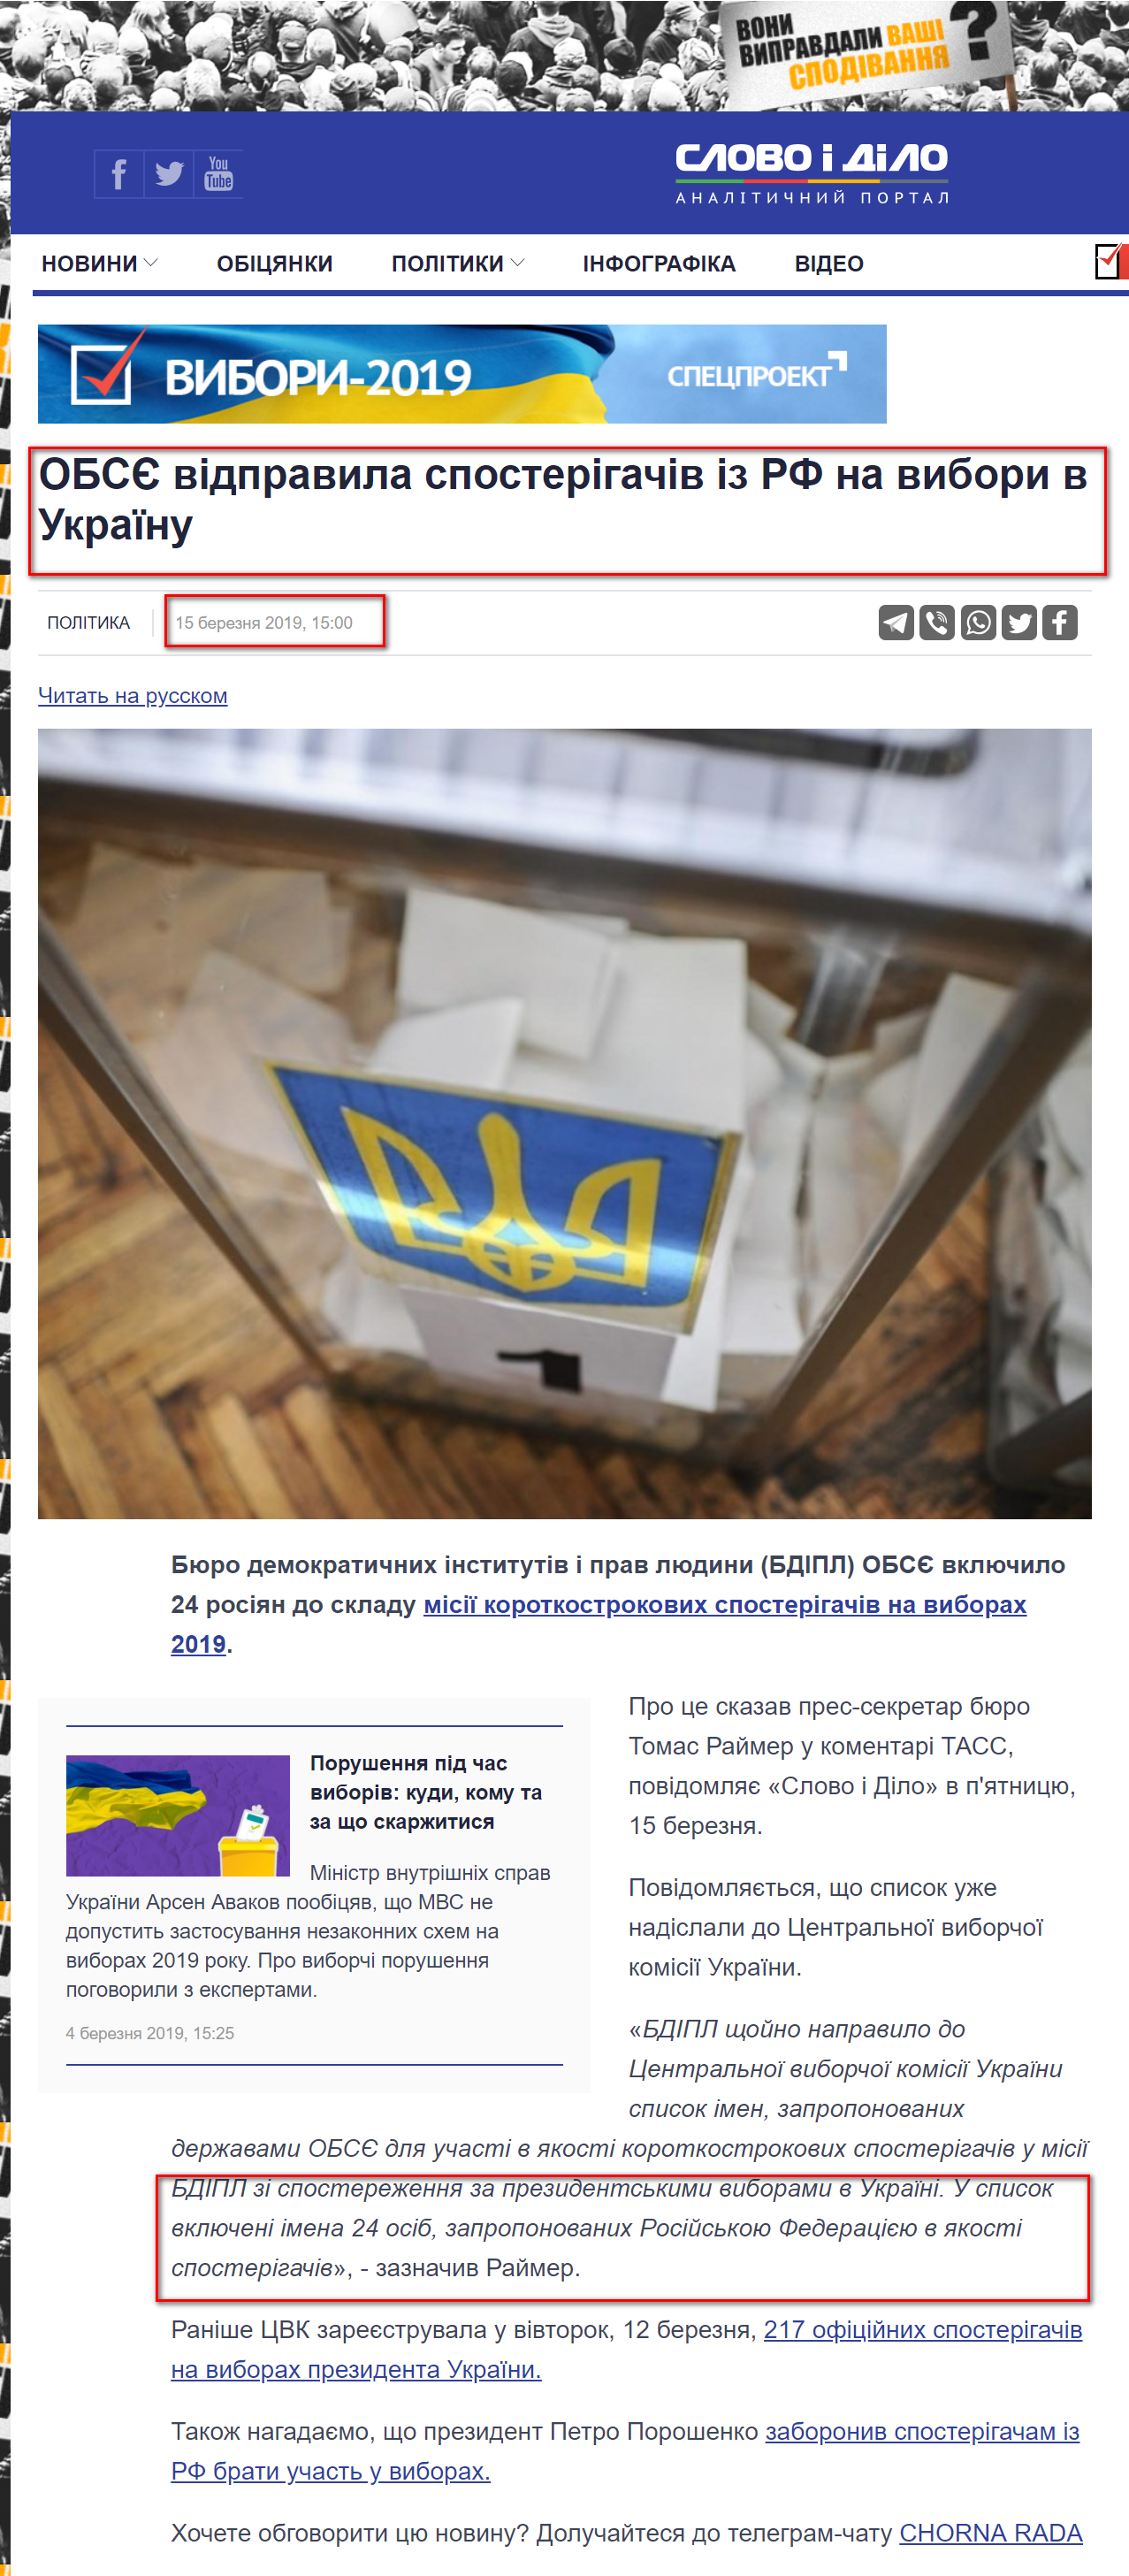 https://www.slovoidilo.ua/2019/03/15/novyna/polityka/obsye-napravylo-sposterihachiv-rf-vybory-ukrayinu